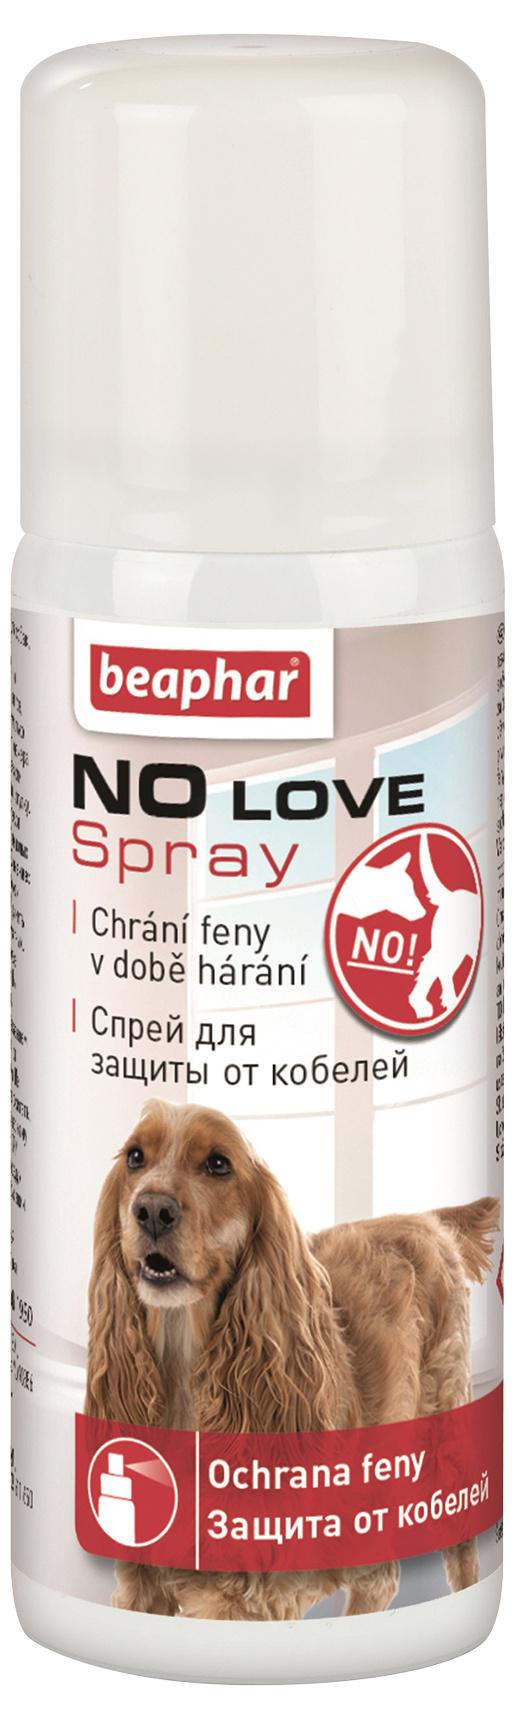 Beaphar NO LOVE spray pro hárající feny